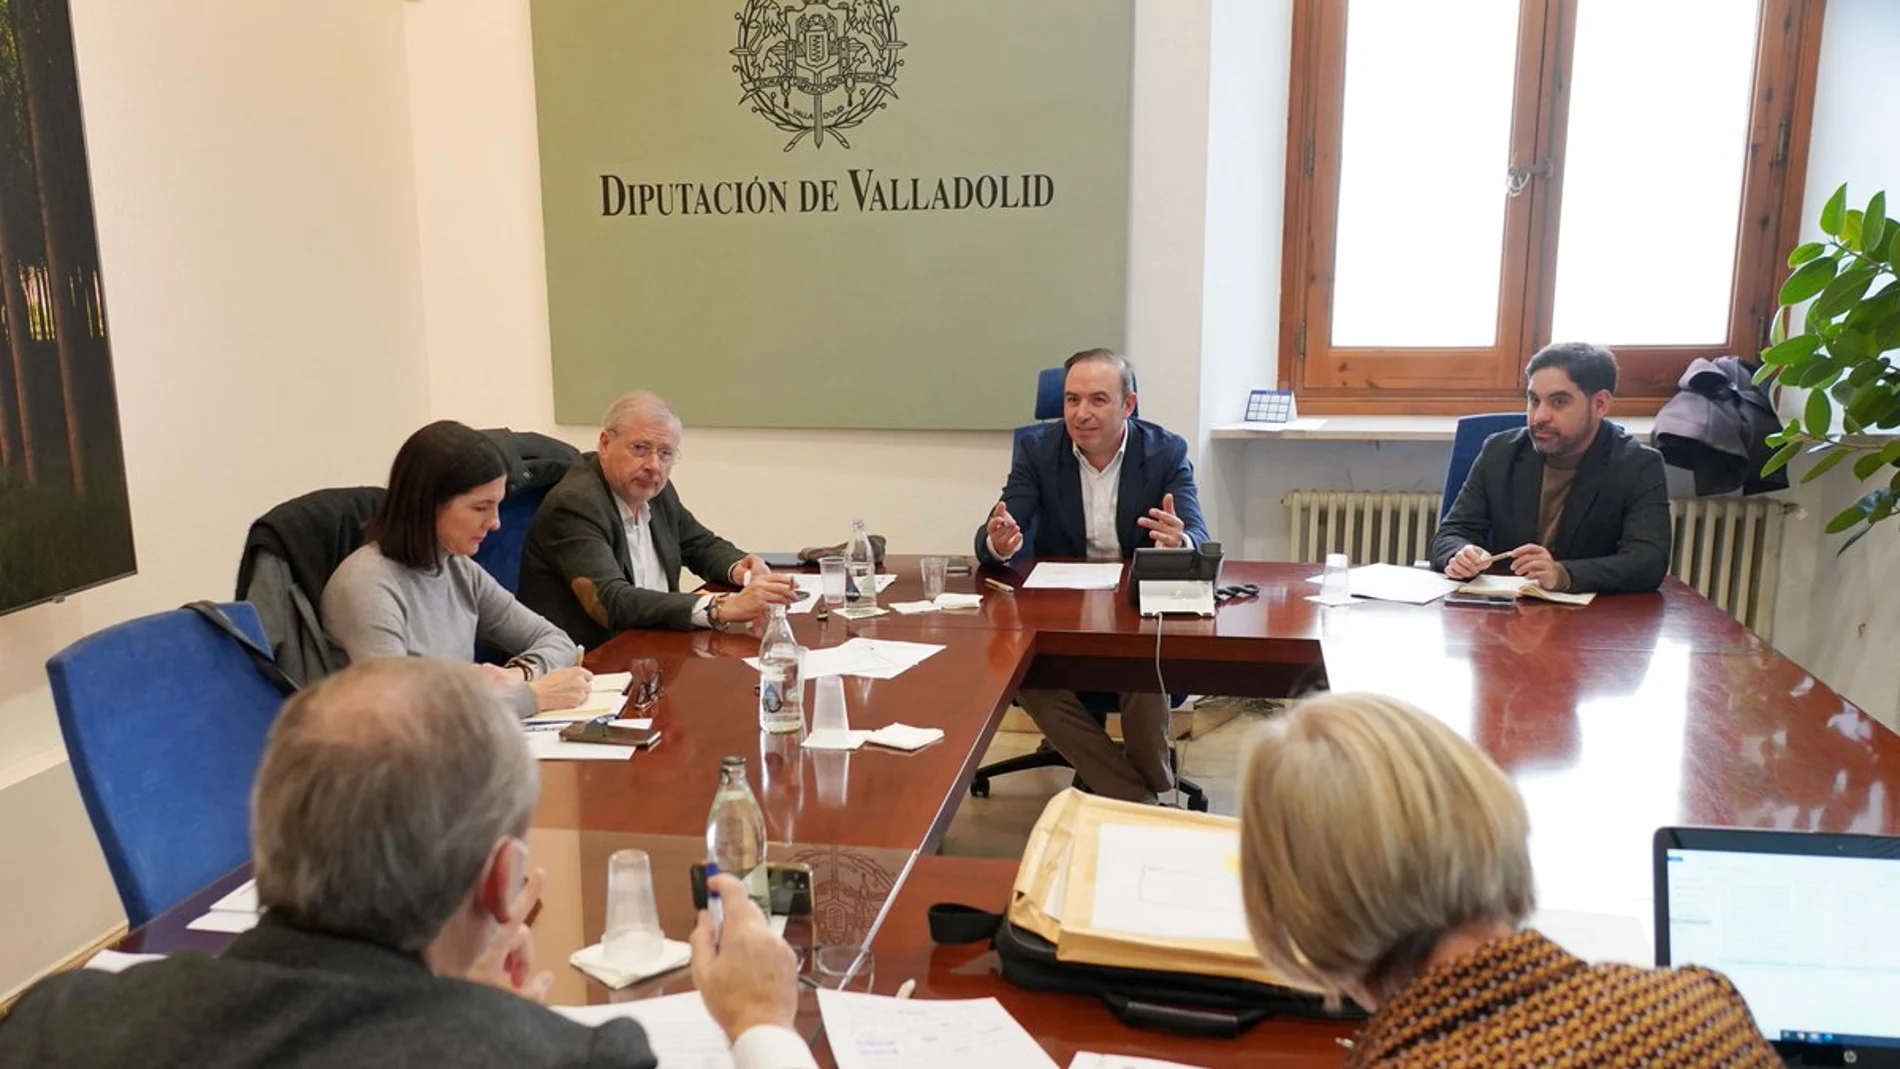 Víctor Alonso, vicepresidente de la Diputación, preside la reunión del jurado